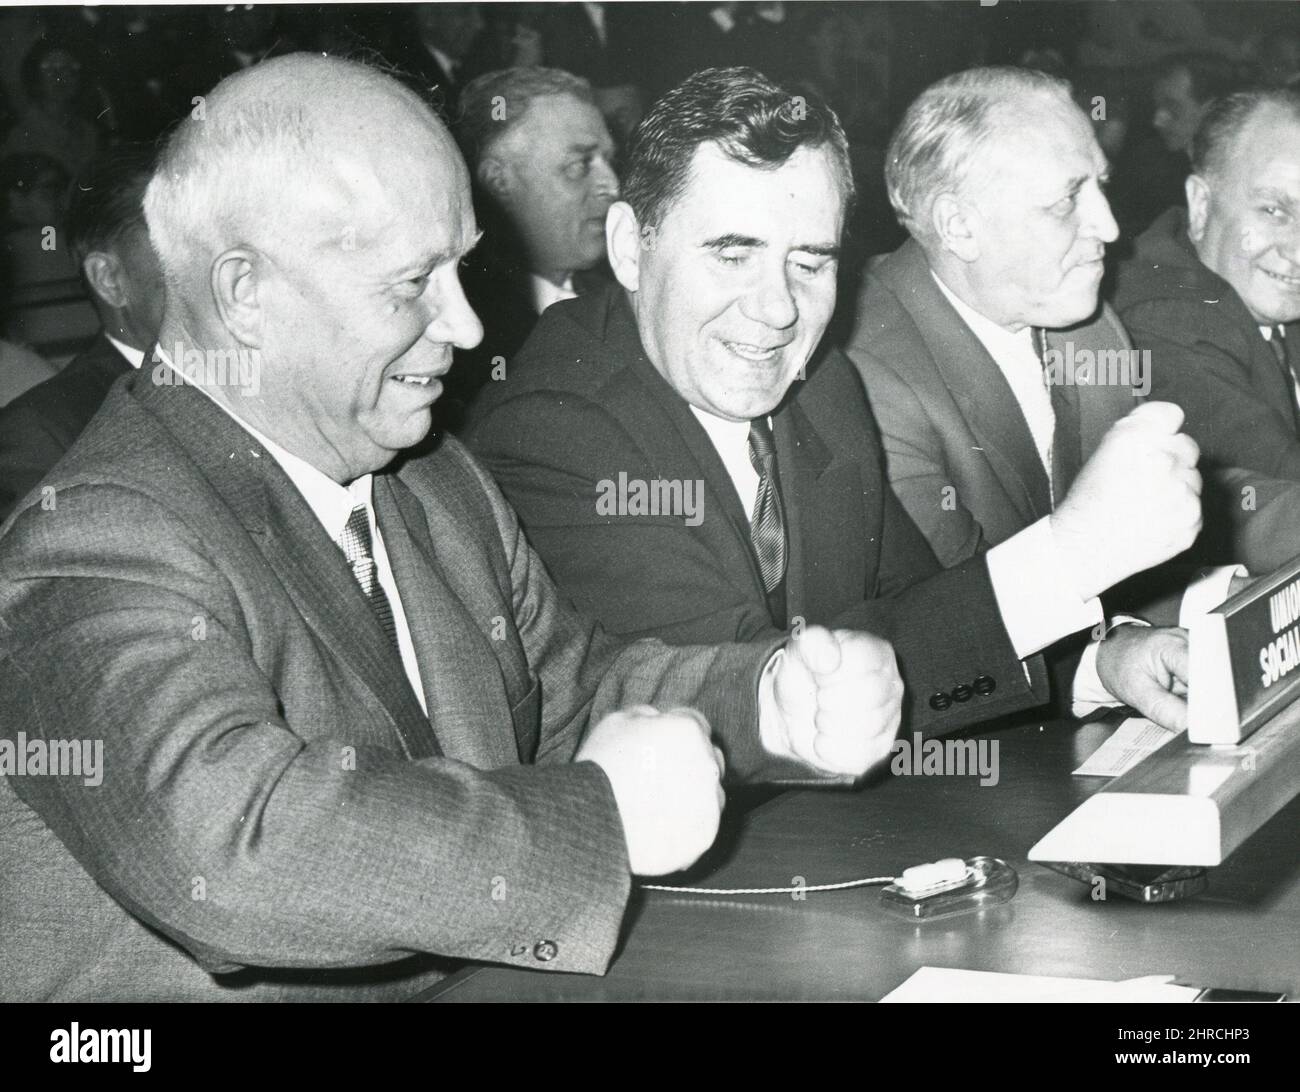 10-13-60 - New York - der sowjetische Premier Nikita Chruschtschow und der sowjetische Außenminister Andrei Gromyko (rechts) zerstochen den Tisch bei den Vereinten Nationen. Das Pochen fand statt, als die meisten Delegierten der Generalversammlung 15. zu Beginn der Sitzung dem UN-Präsidenten Frederick Boland herzlich applaudierten. Stockfoto